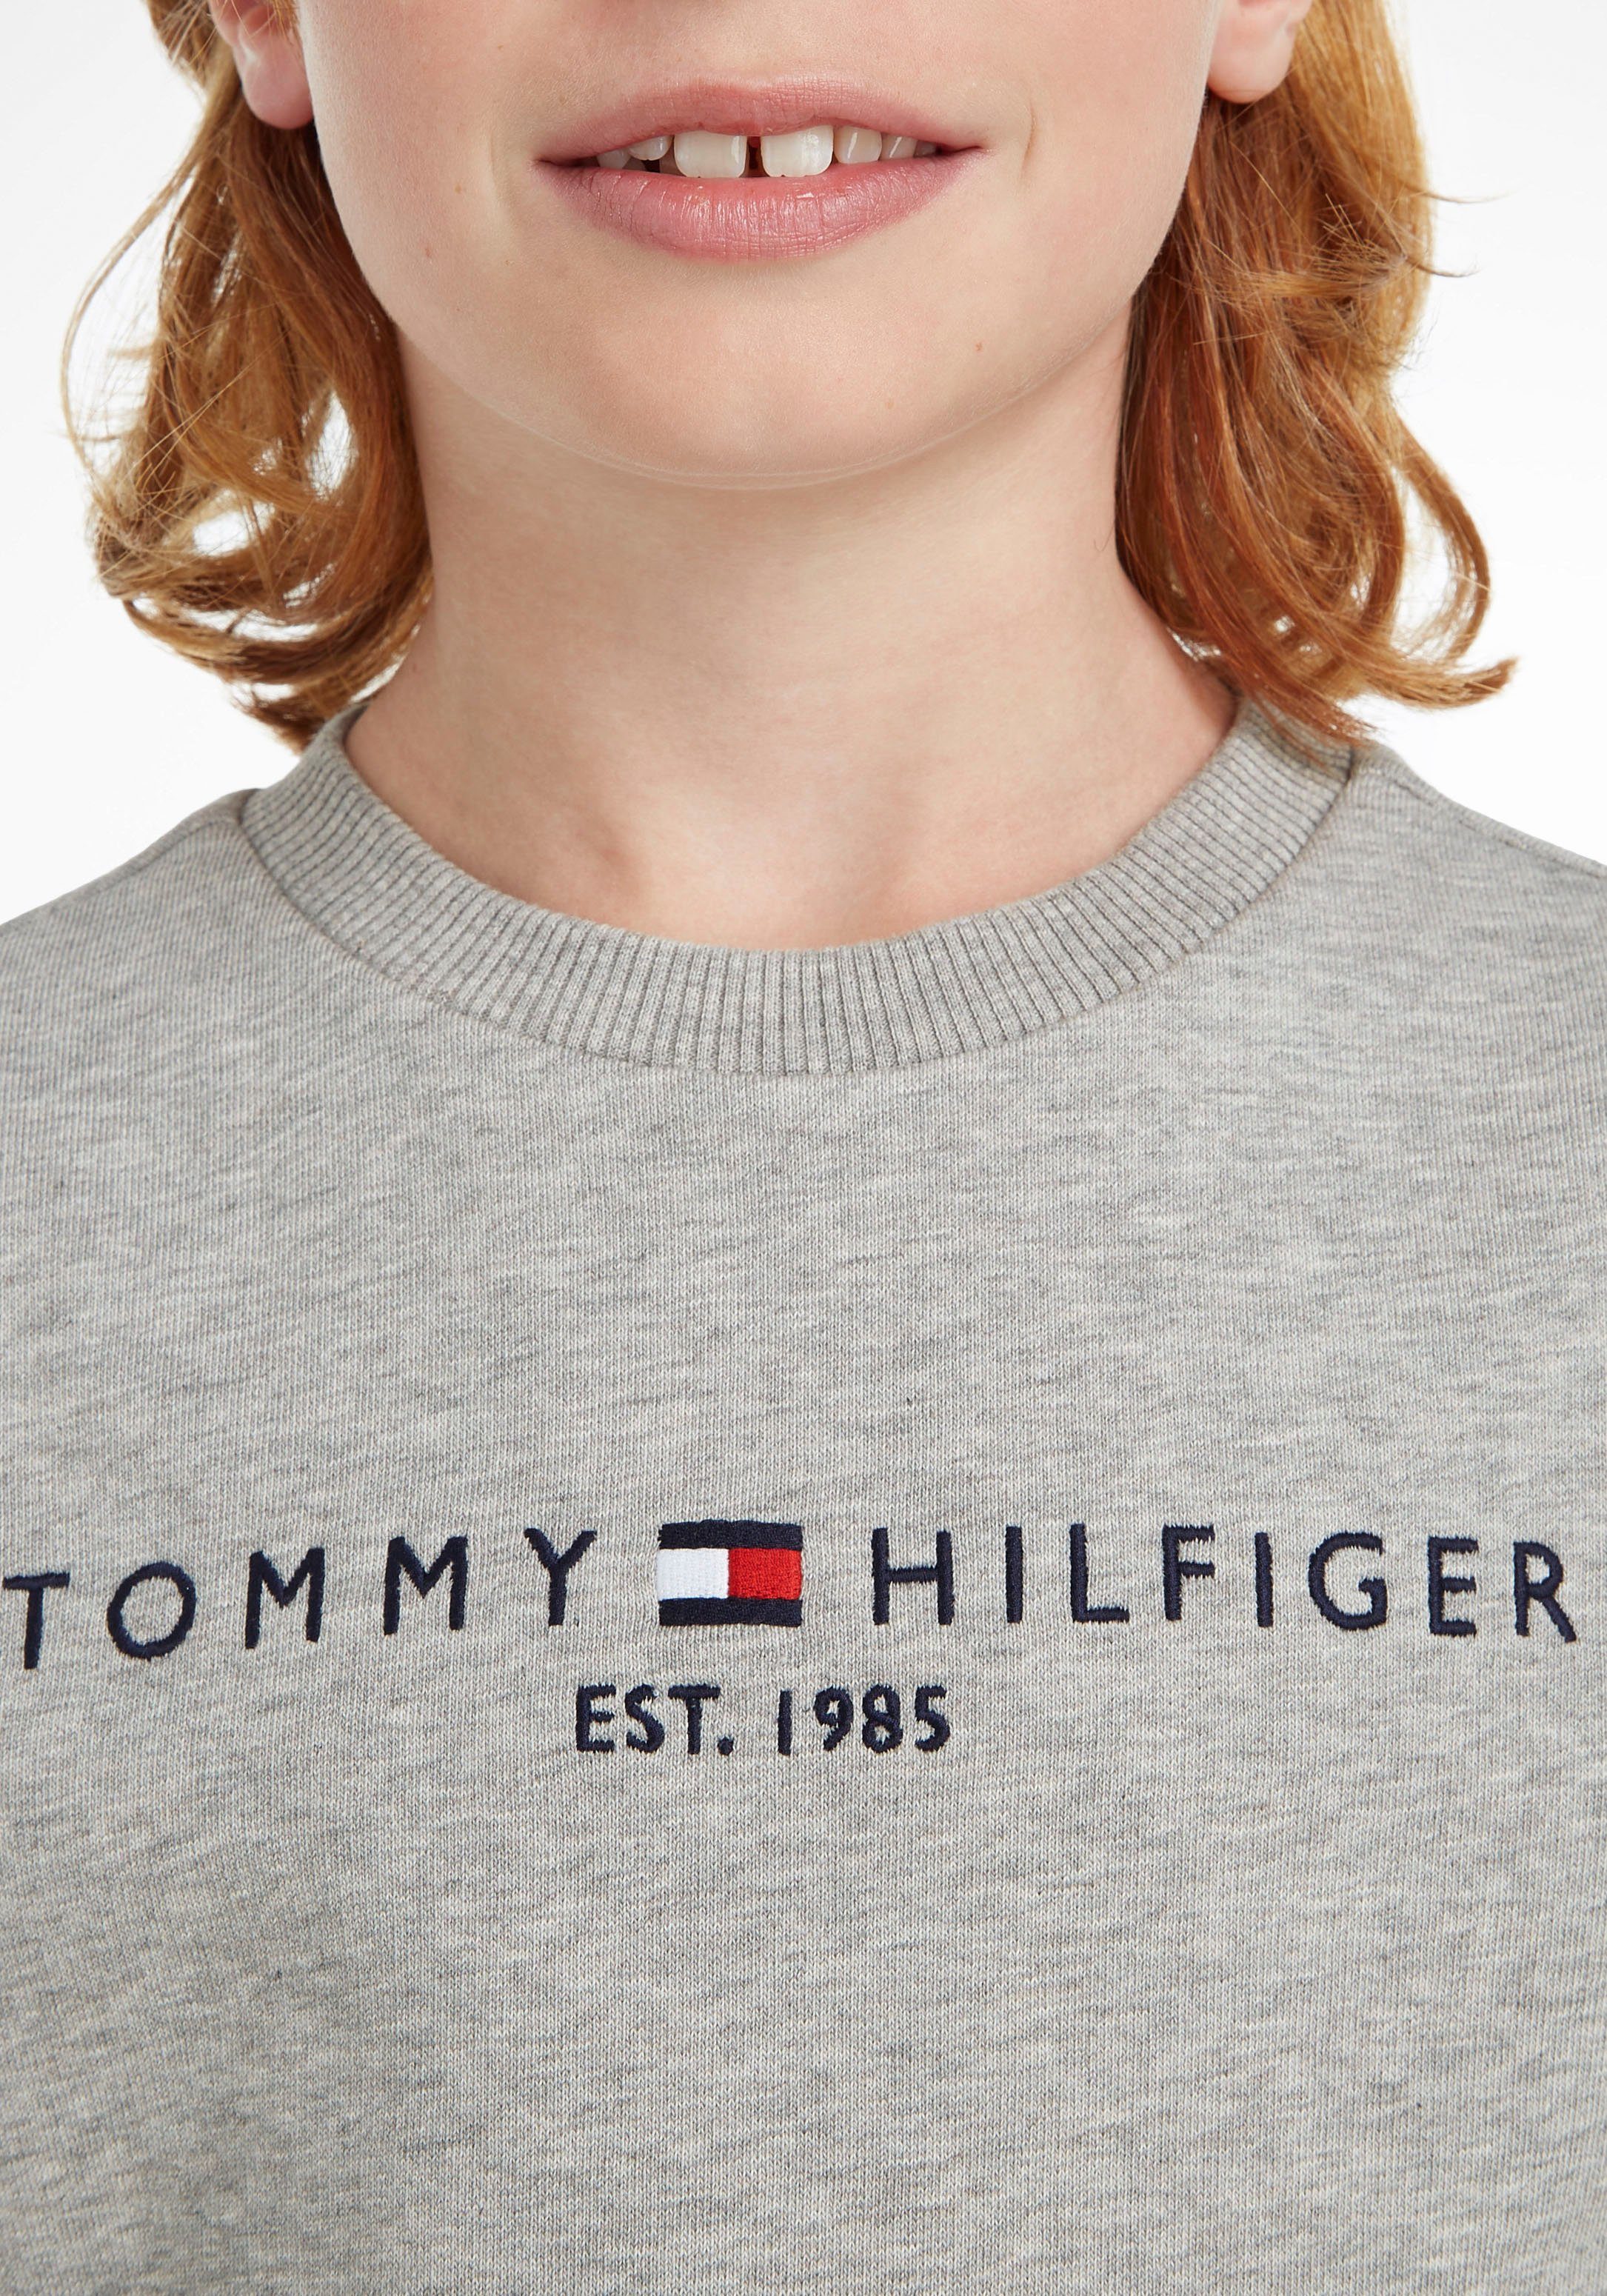 Tommy Hilfiger Sweatshirt ESSENTIAL Kinder und Kids MiniMe,für Mädchen Jungen Junior SWEATSHIRT